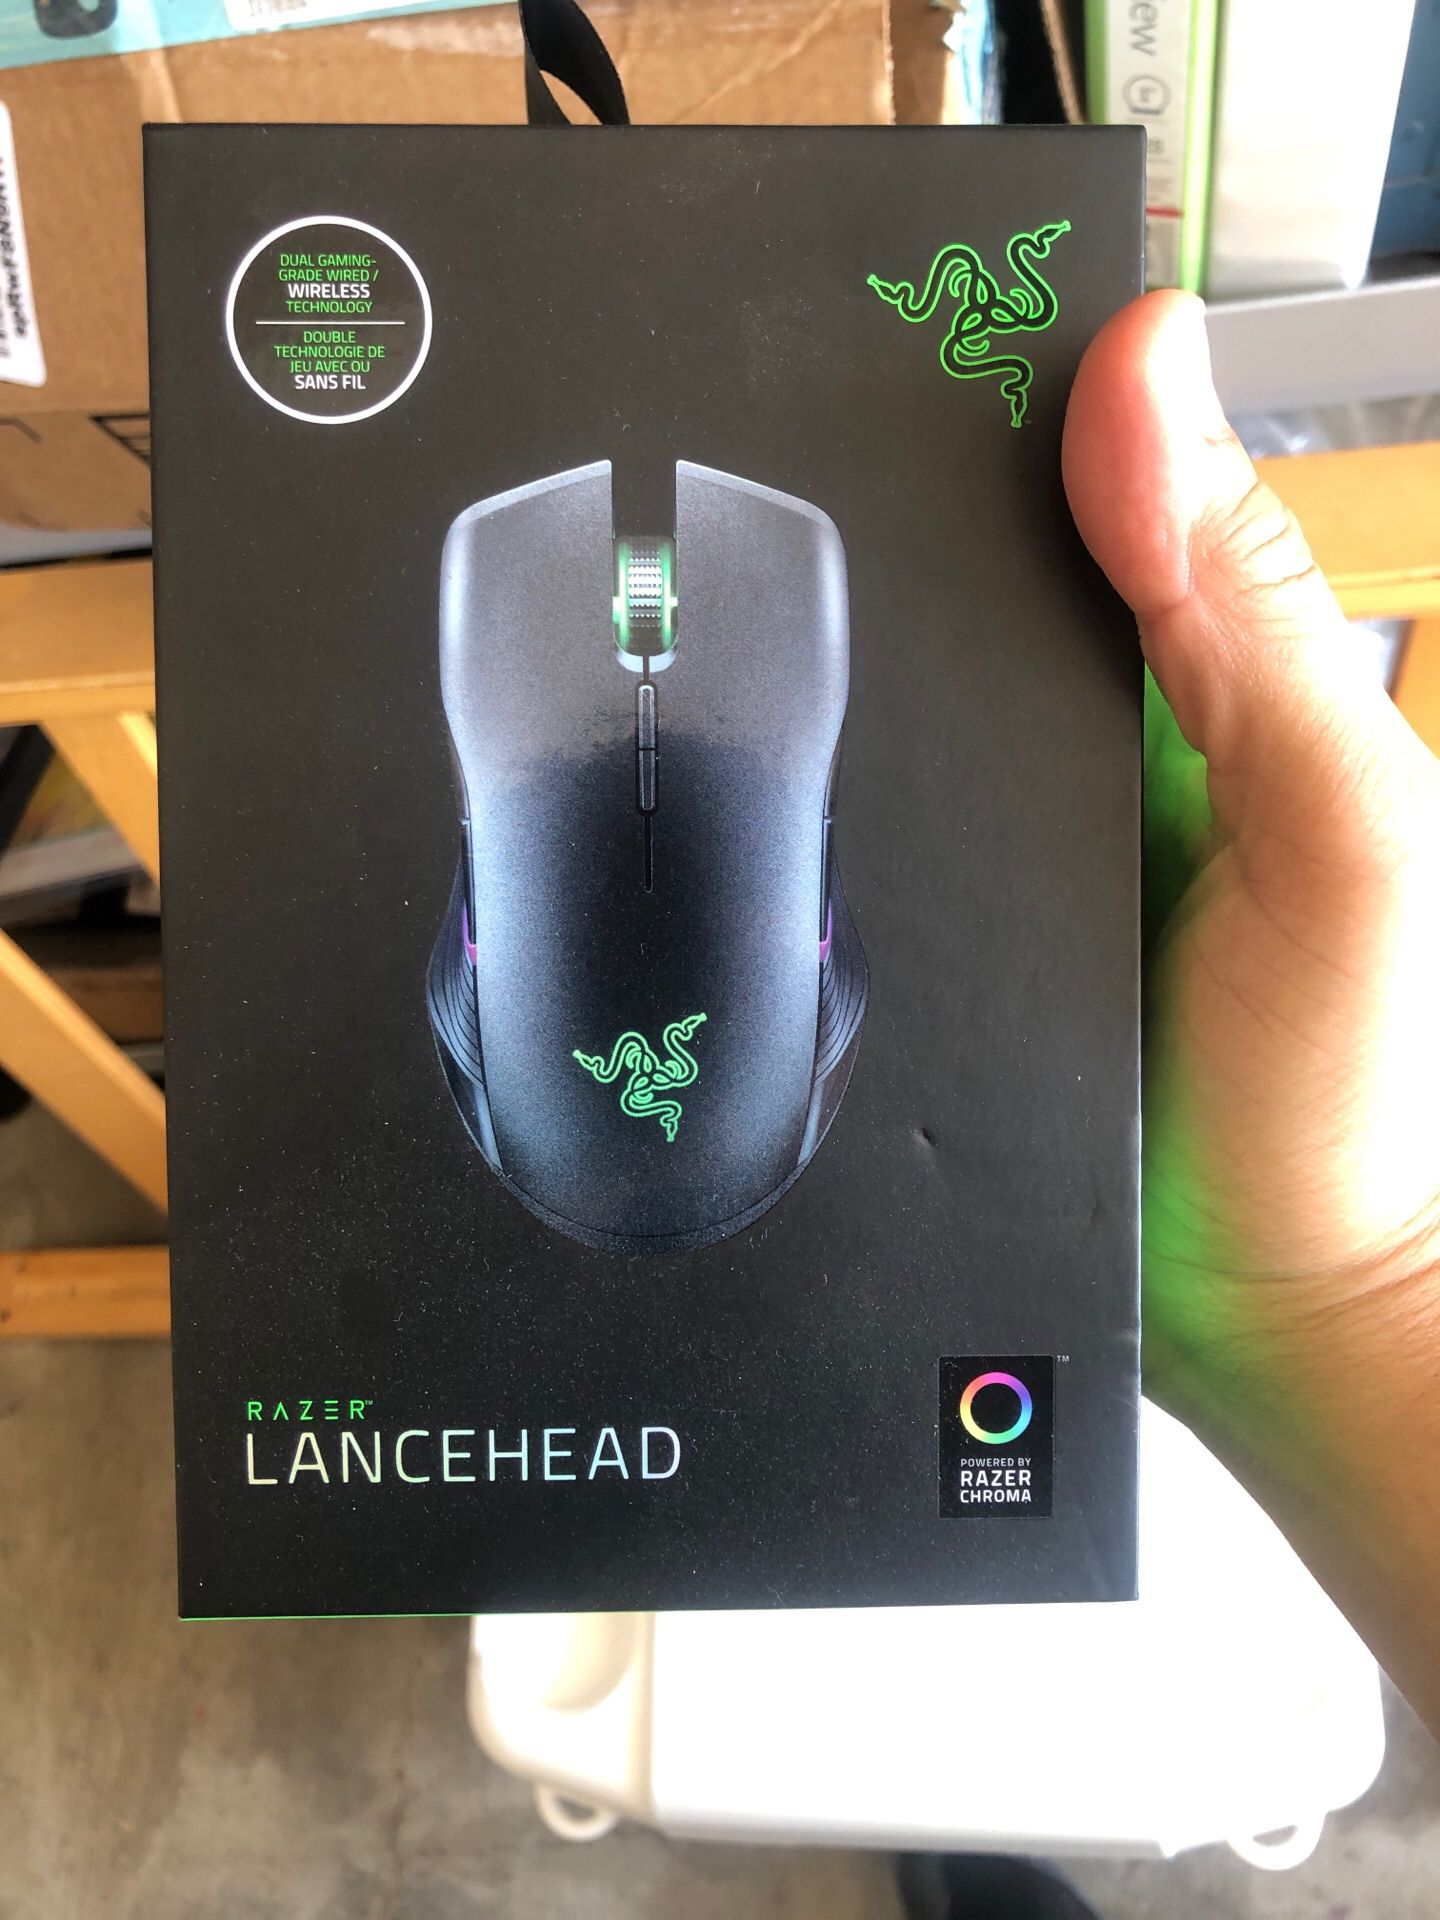 Razer lancehead mouse wireless